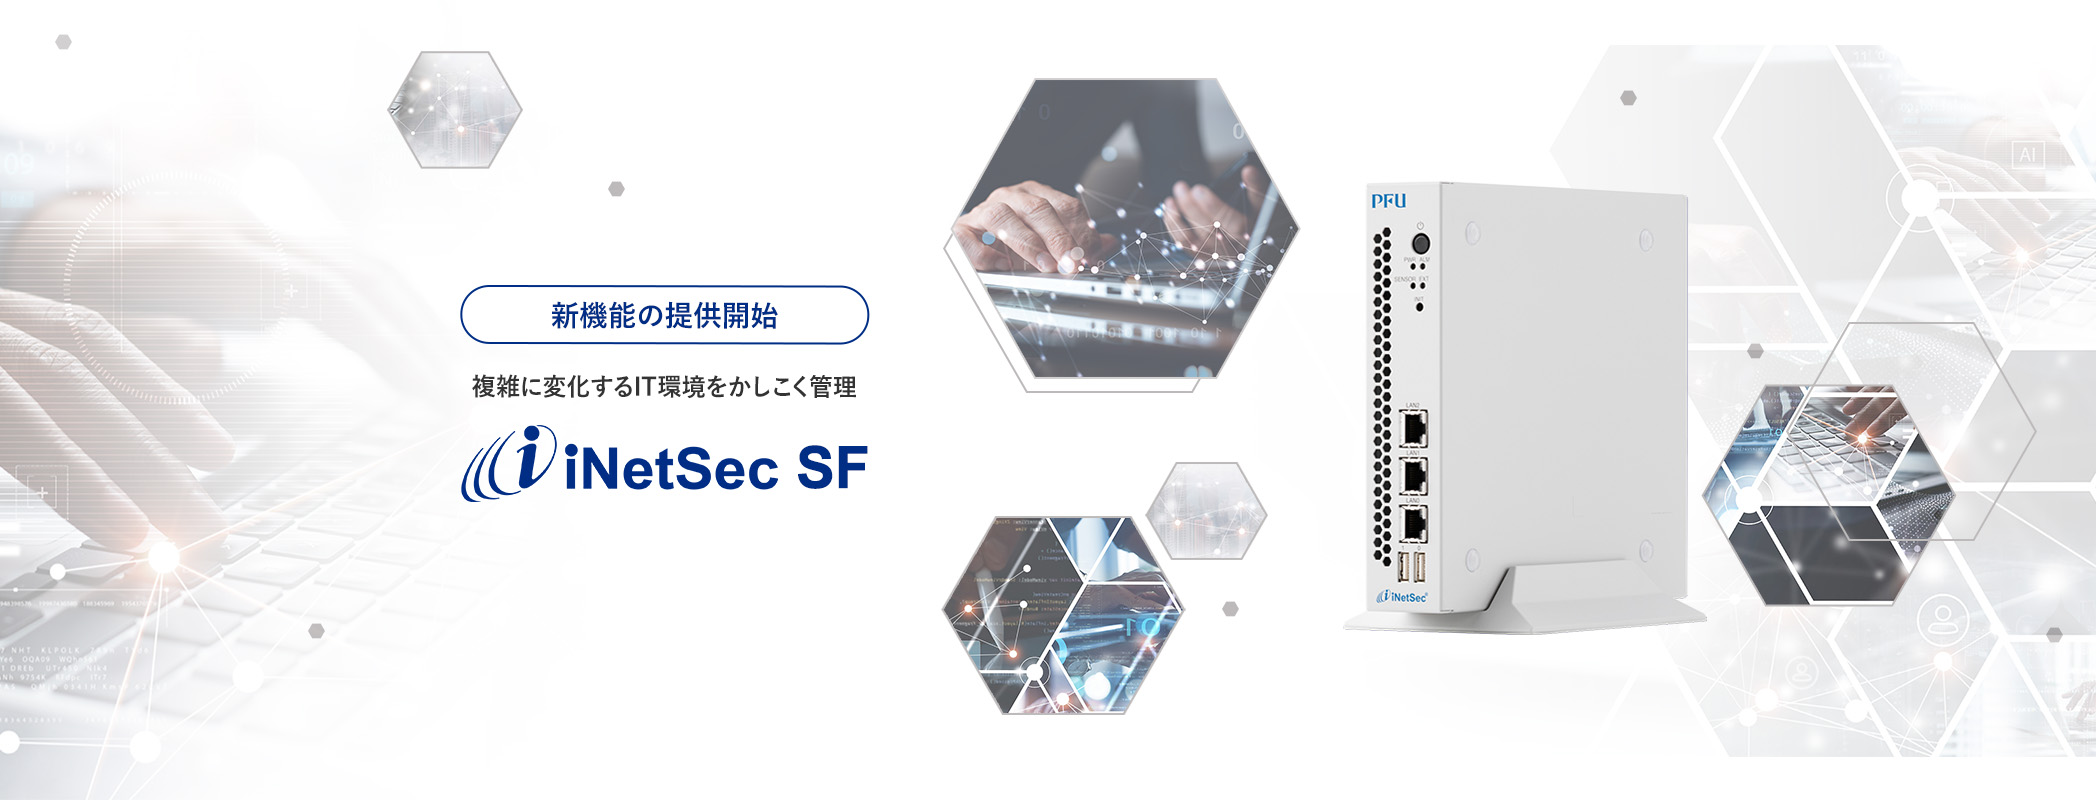 複雑に変化するIT環境をかしこく管理する「iNetSec SF」新機能を提供開始